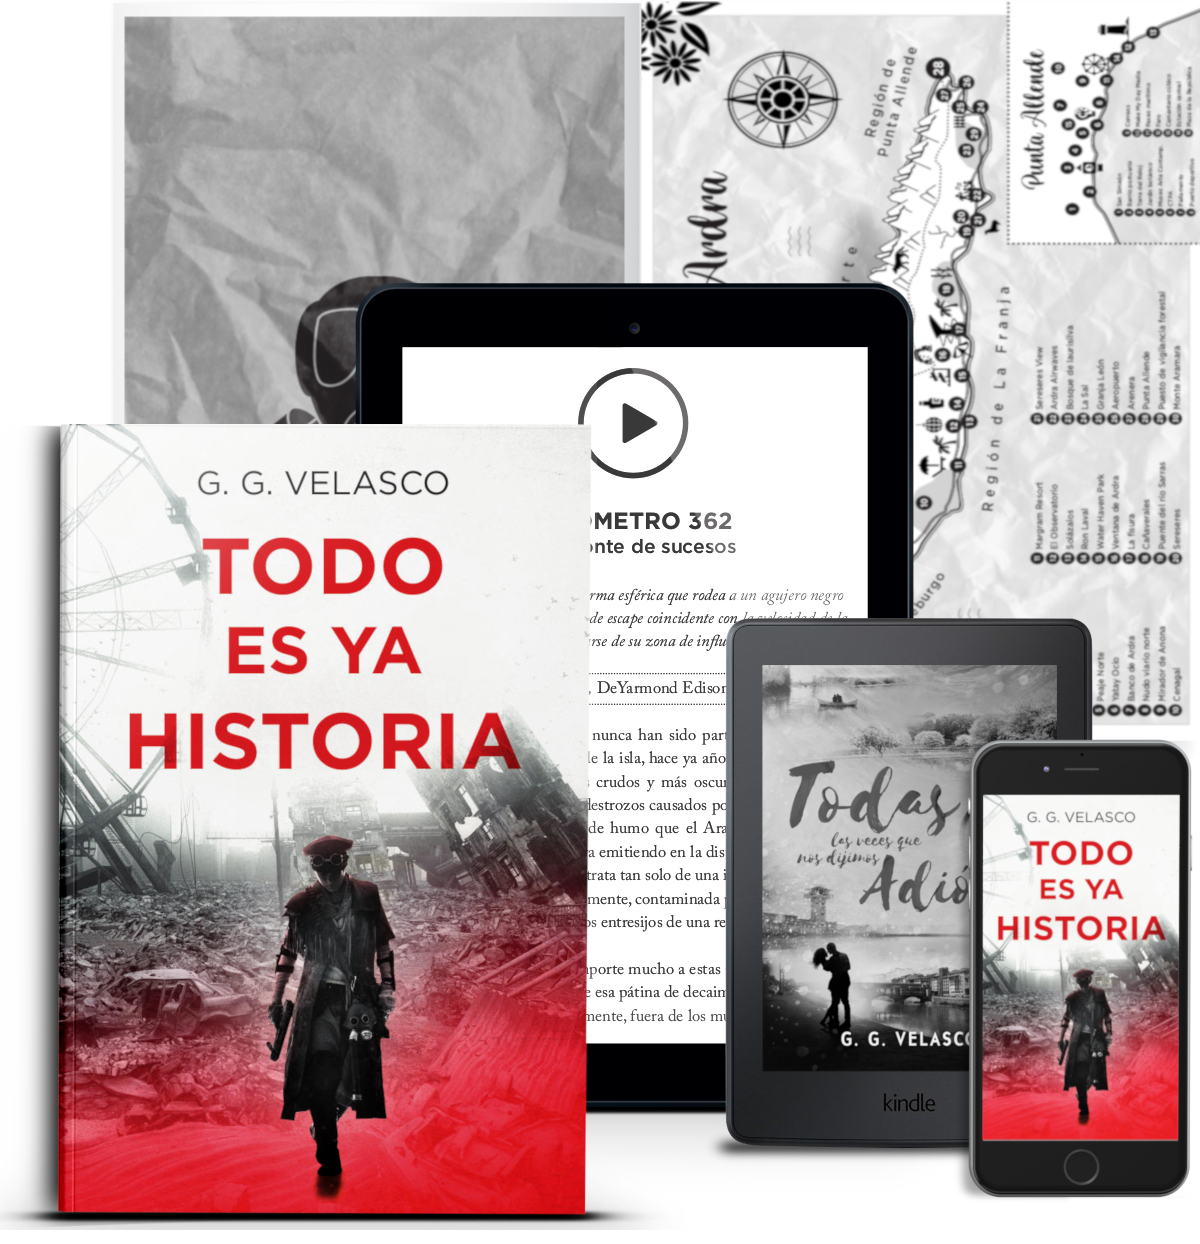 Todo es ya historia, la última novela del escritor independiente nominado a los premios Amazon, G. G. Velasco